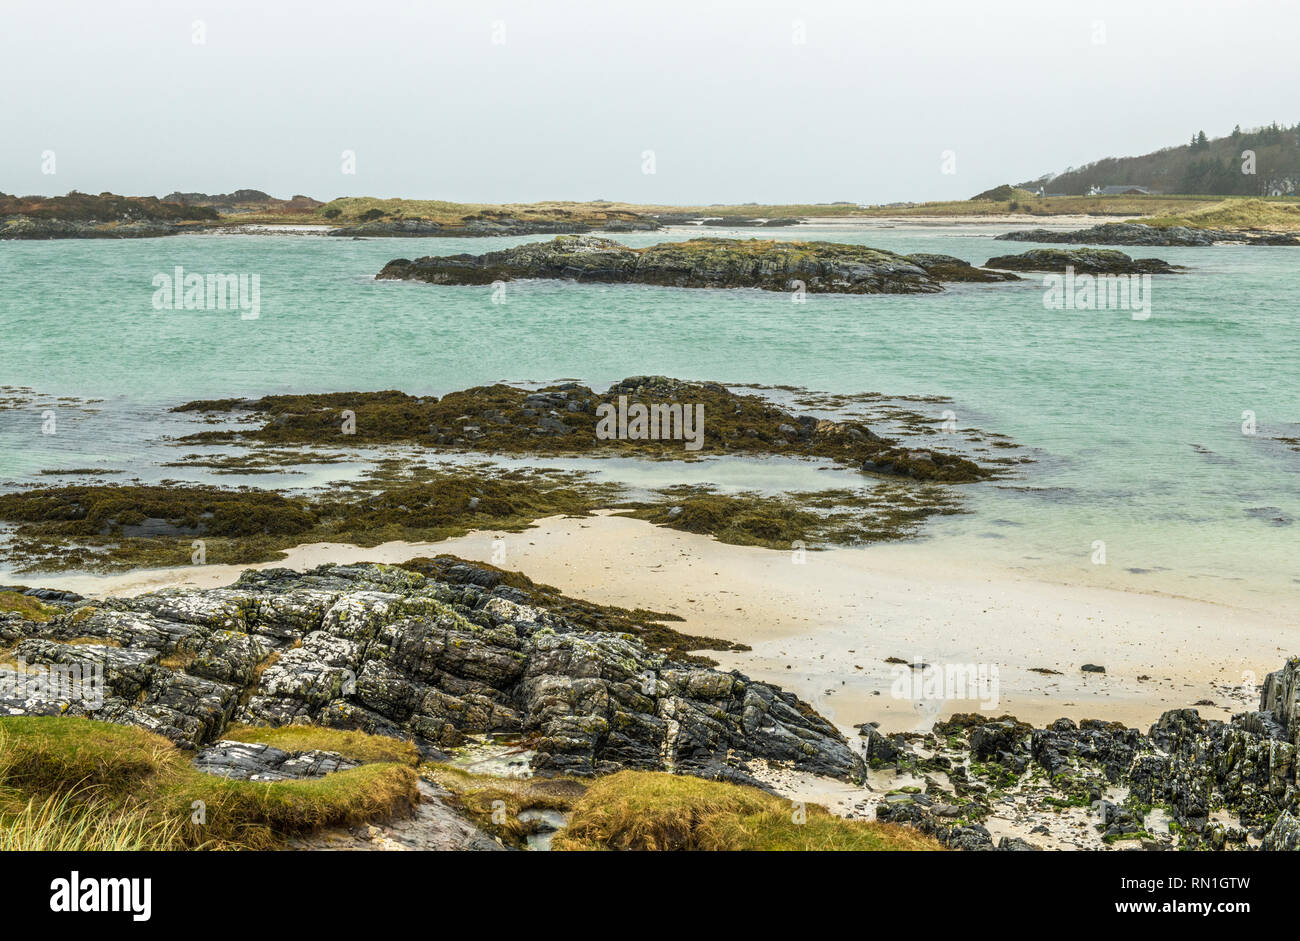 Spiaggia Traigh a ovest la costa scozzese vicino a Mallaig, fotografato su un ottuso meteo giorno ma ancora con abbondanza di dettaglio delle rocce, sabbia e mare. Foto Stock